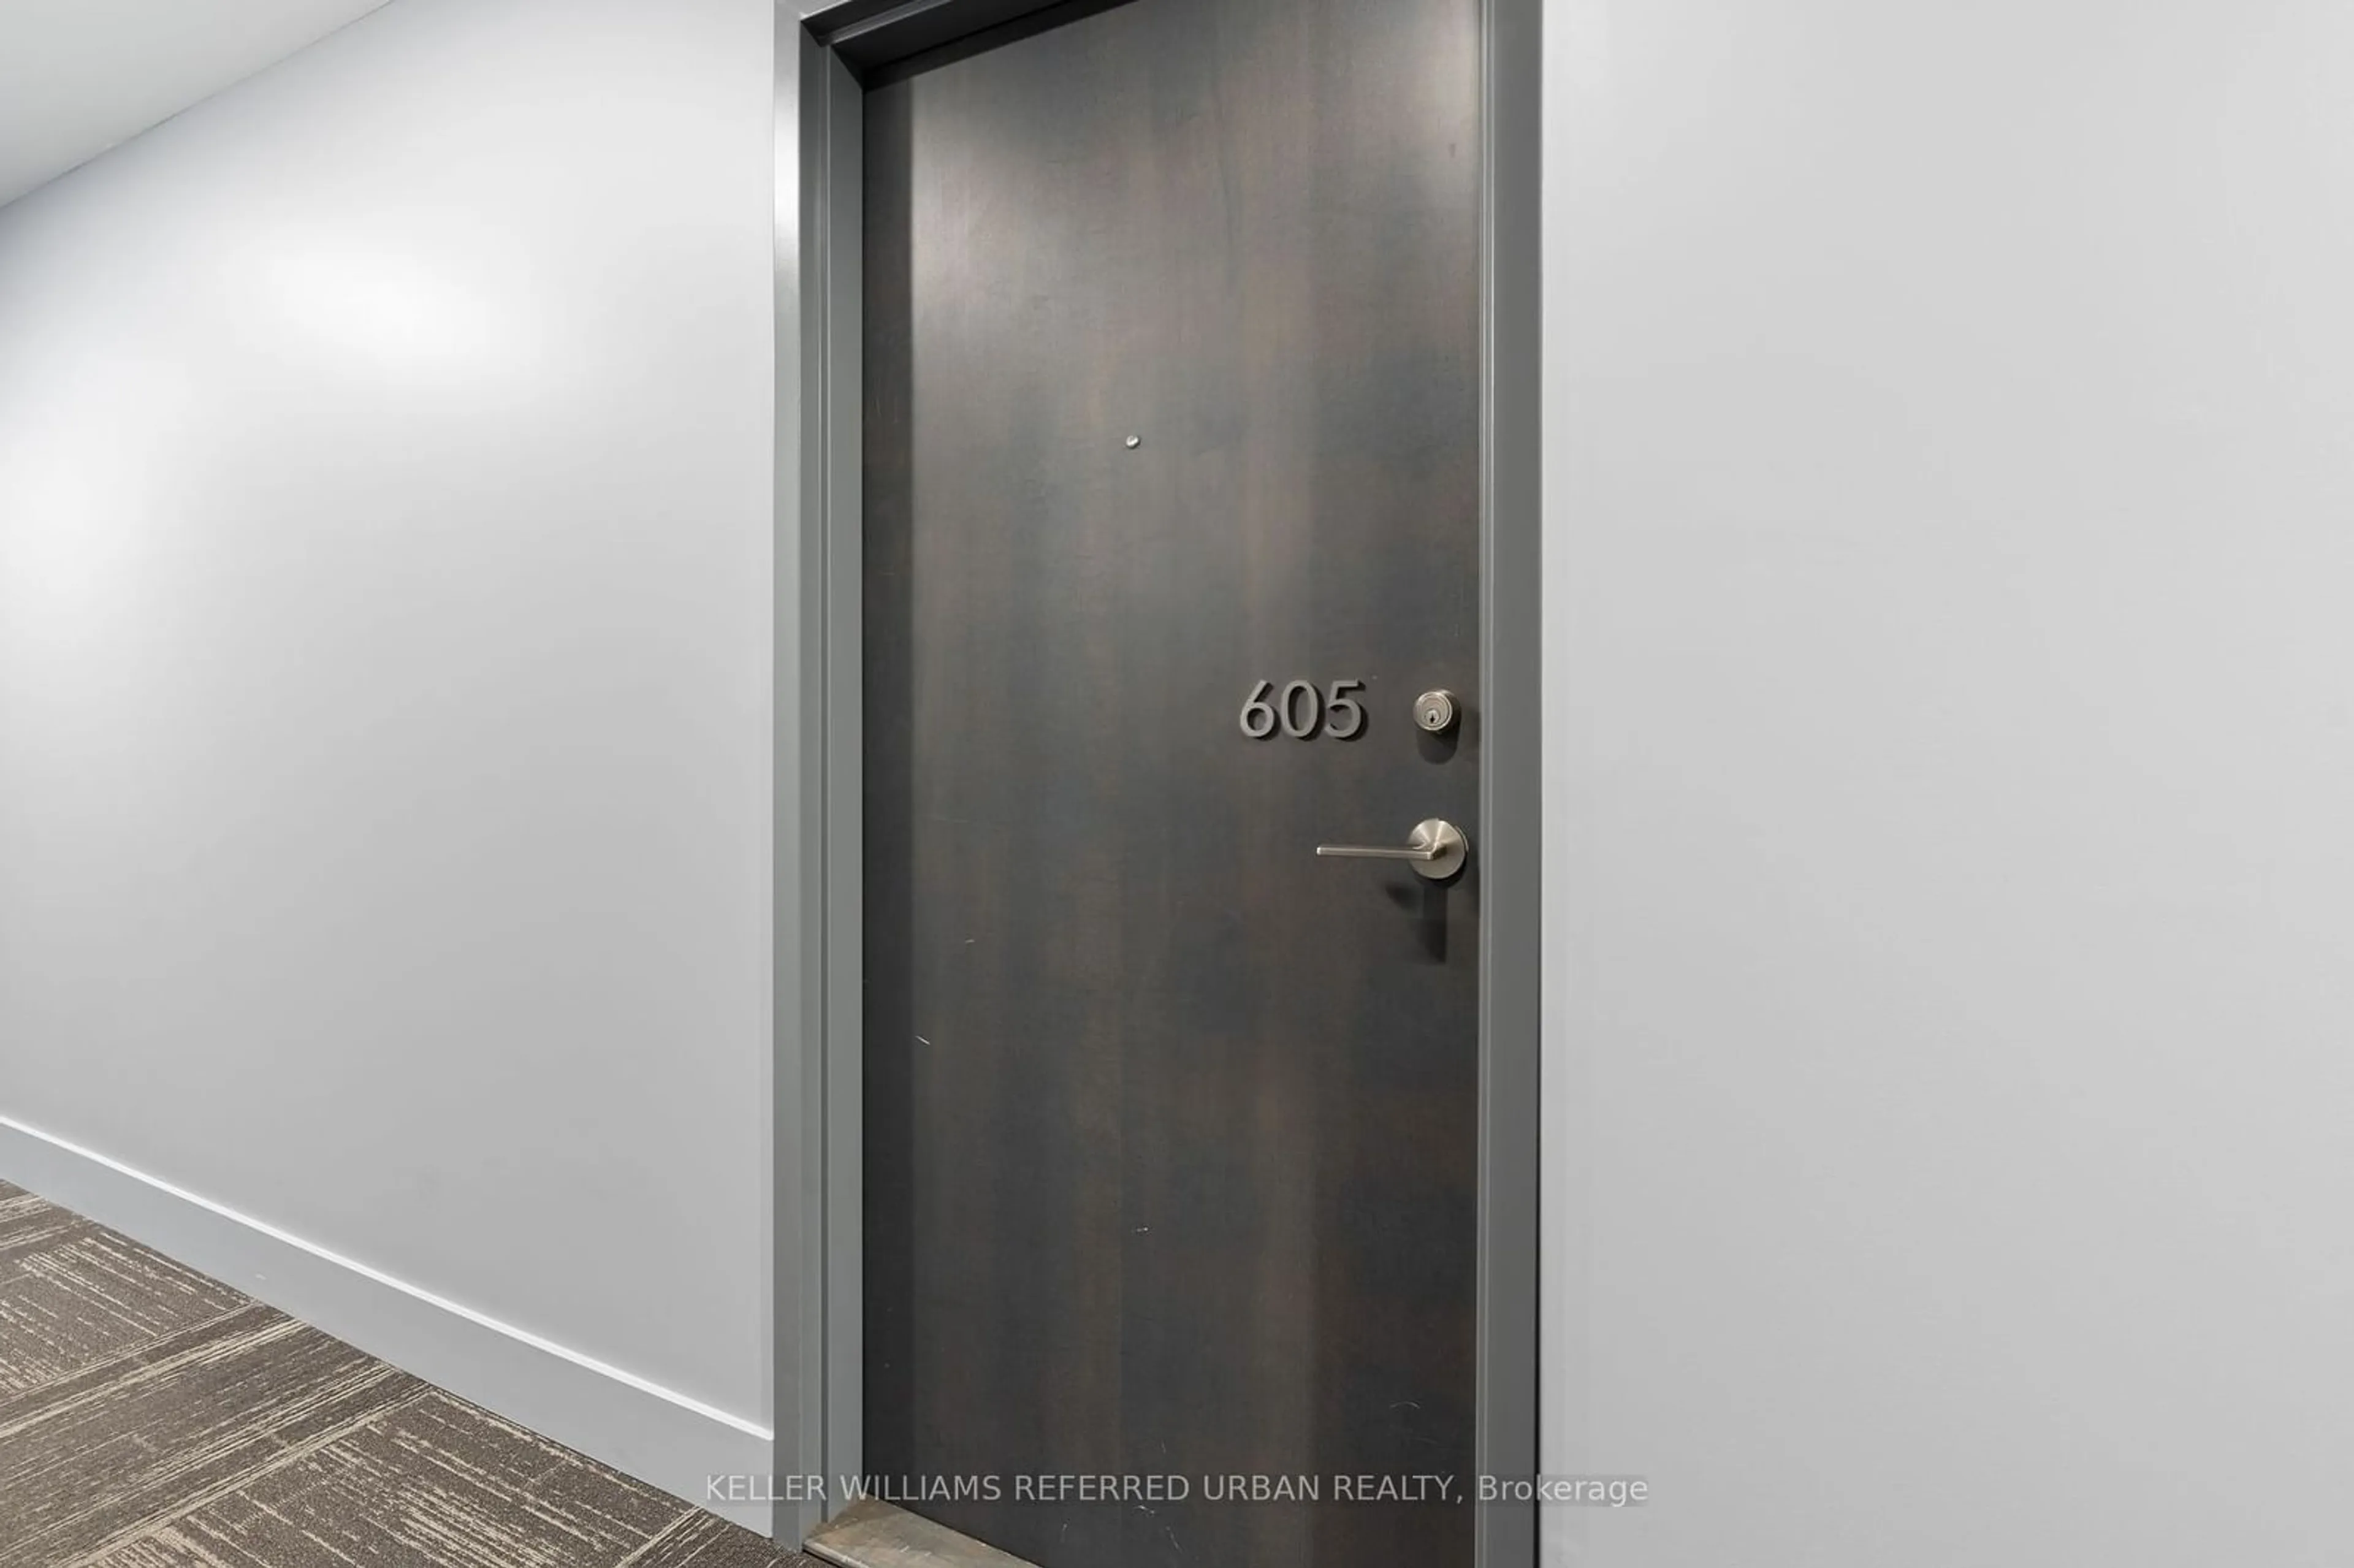 Indoor entryway for 630 Queen St #605, Toronto Ontario M4M 1G3